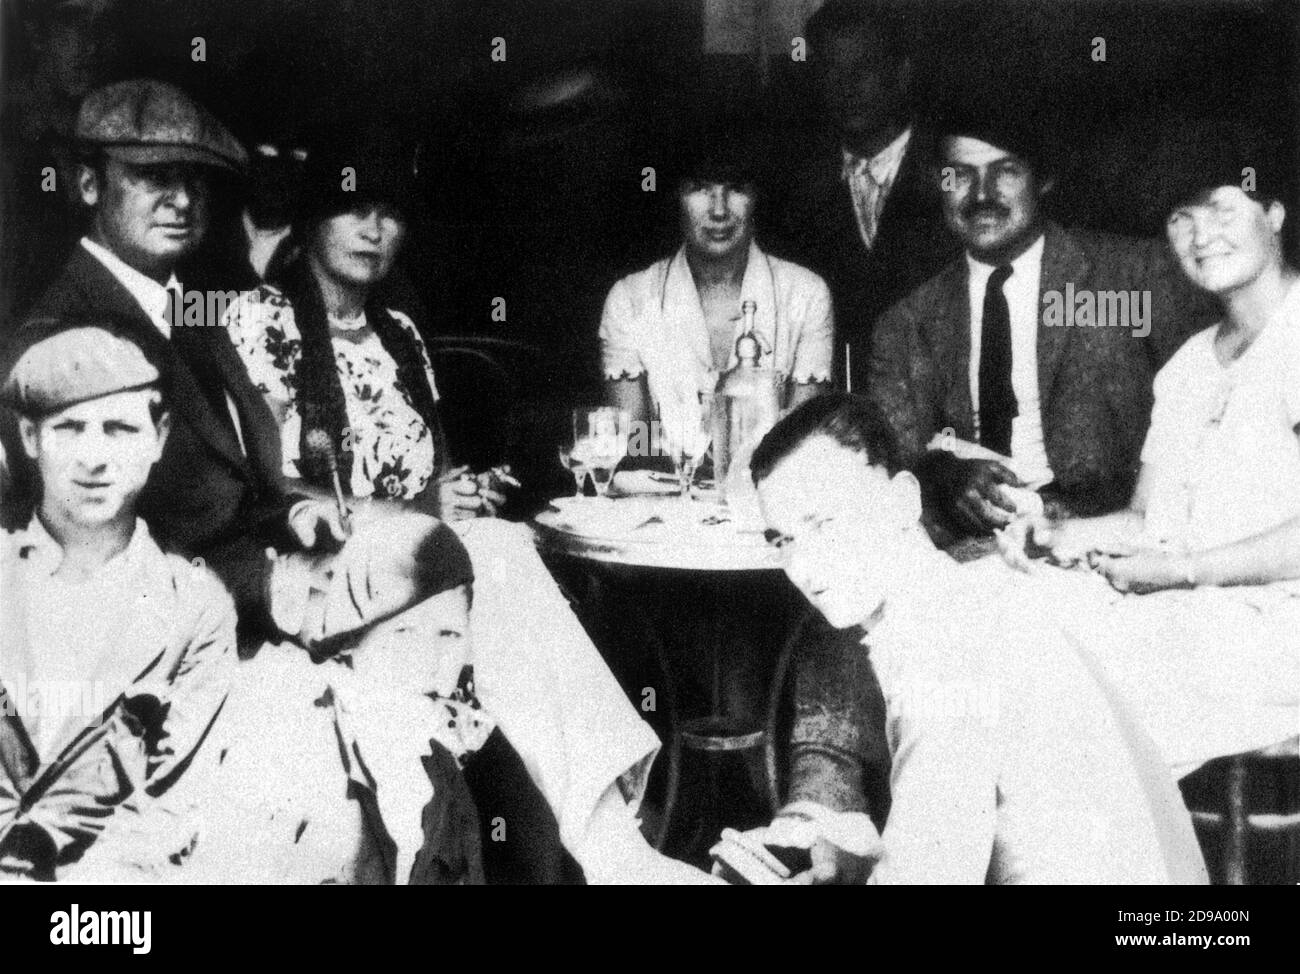 Legendäre amerikanische Auswanderer trinken Absinth vor den Stierkämpfen in Pamplona , Spanien , 1926 . Von links nach rechts: der amerikanische Künstler GERAL MURPHY (1888 - 1964) und seine Frau SARA MURPHY (1883 - 1975), PAULINE PFEIFFER (die nächste zweite Frau Hemingway), ERNEST HEMINGWAY im Baskenland Beret und seine Frau HADLEY. Drei spanische schuhputzservice besuchen Gerald . Hemingway liebte Absinth wegen seiner "ideenverändernden" Wirkung - ASSENZIO - letteratura - Literatur - letterato - Hut - basco - SCRITTORE ---- Archivio GBB Stockfoto